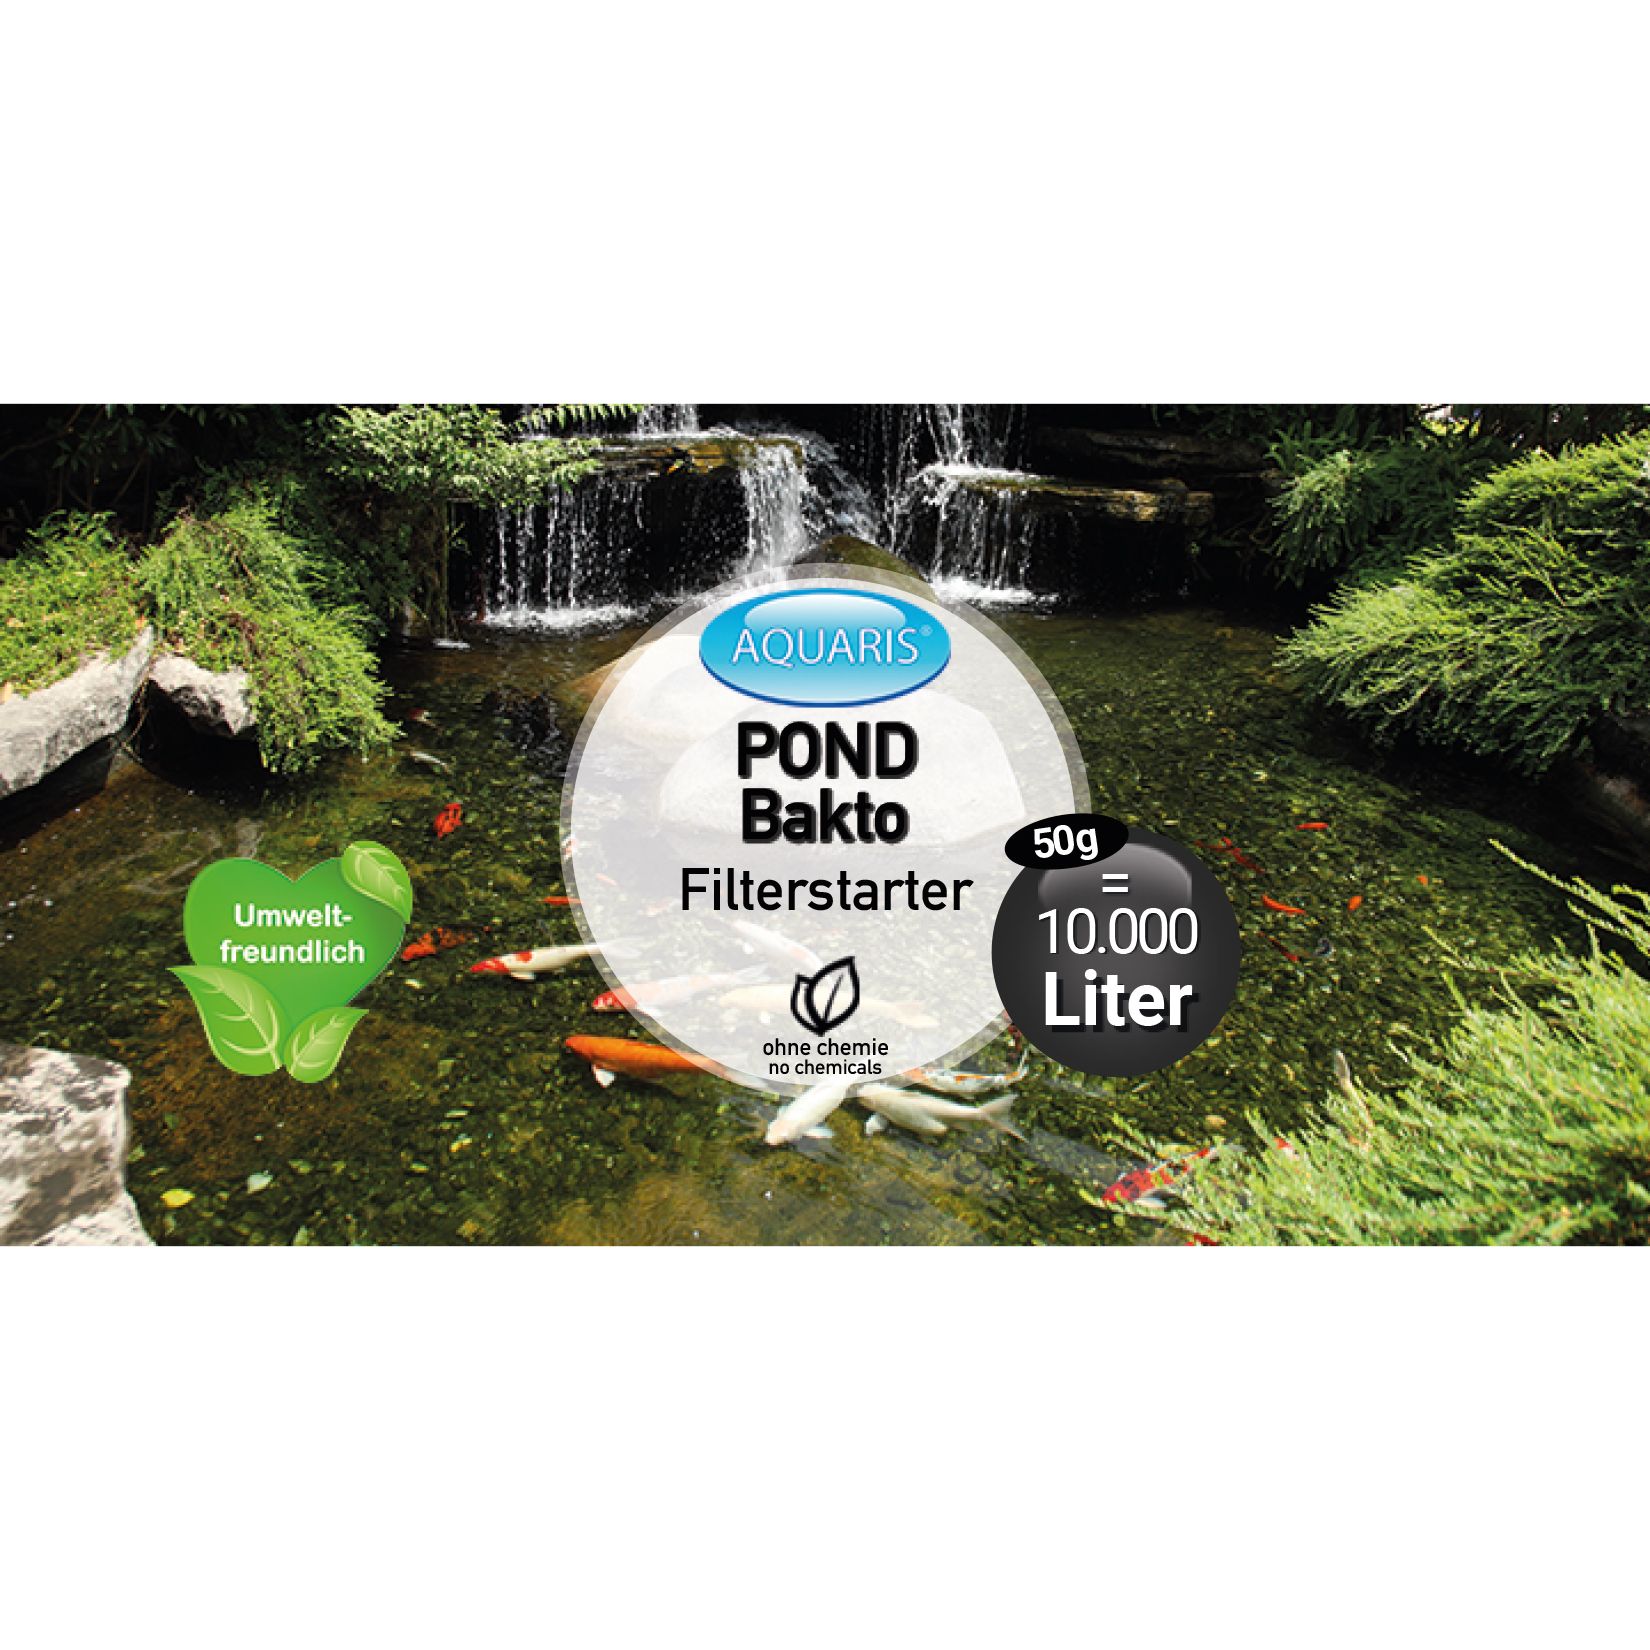 AQUARIS Teichpflege-Produkte für Teichfische - POND Bakto Filterstarter